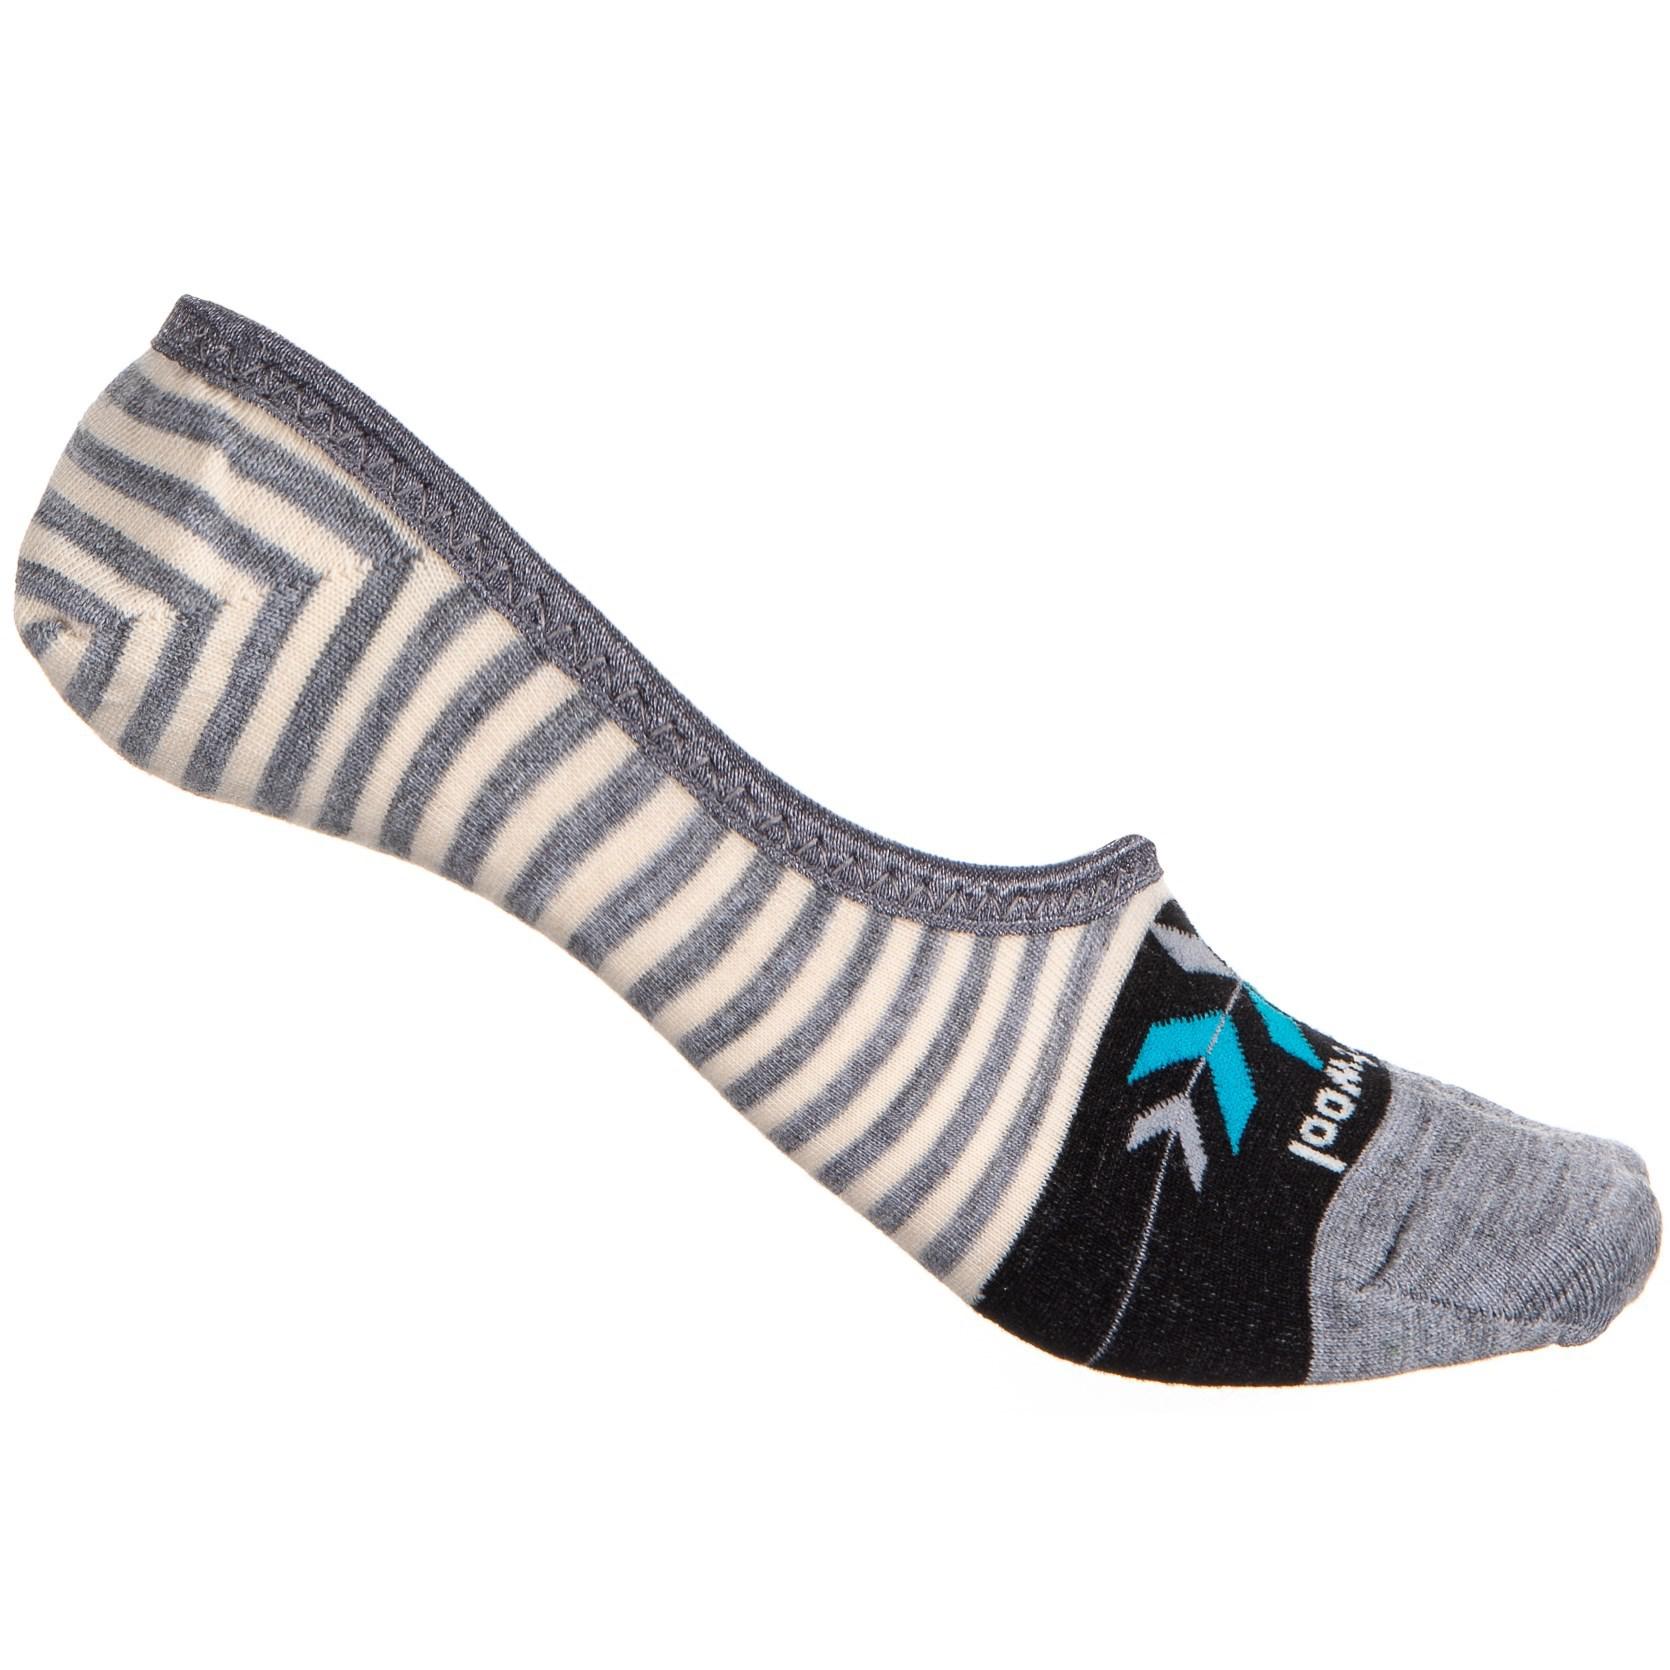 smartwool sneaker socks